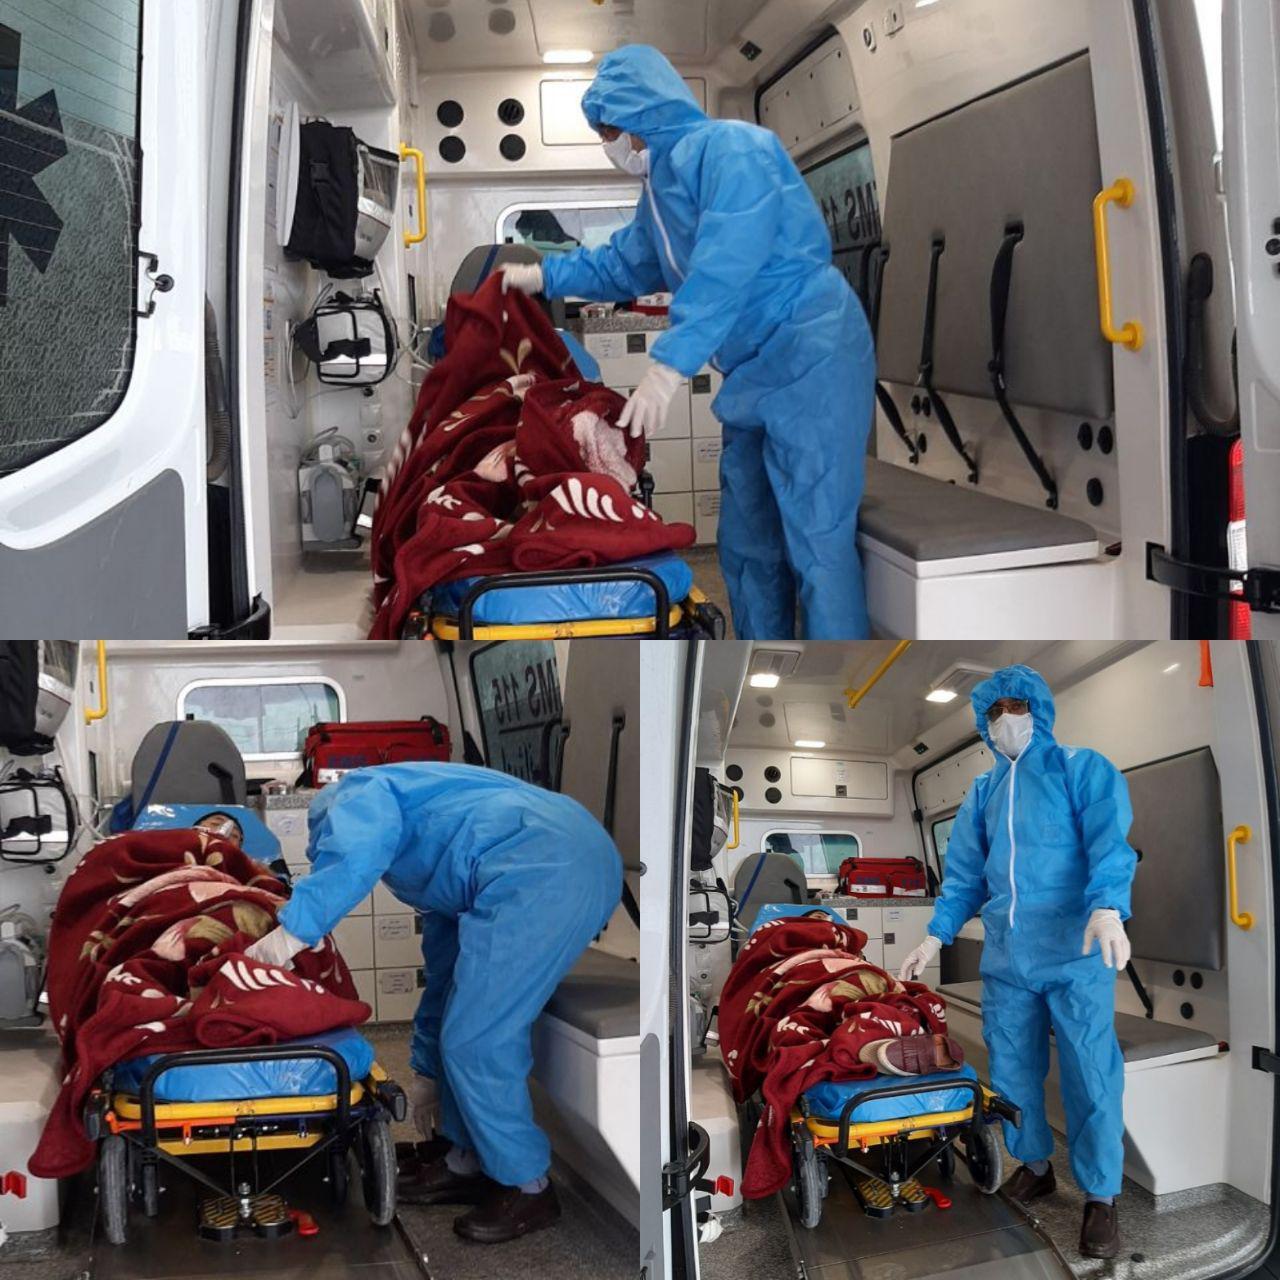 انتقال بیمار مشکوک به کرونا  به بیمارستان امام حسن (ع)توسط پرسنل پايگاه اورژانس 115 شهری آشخانه